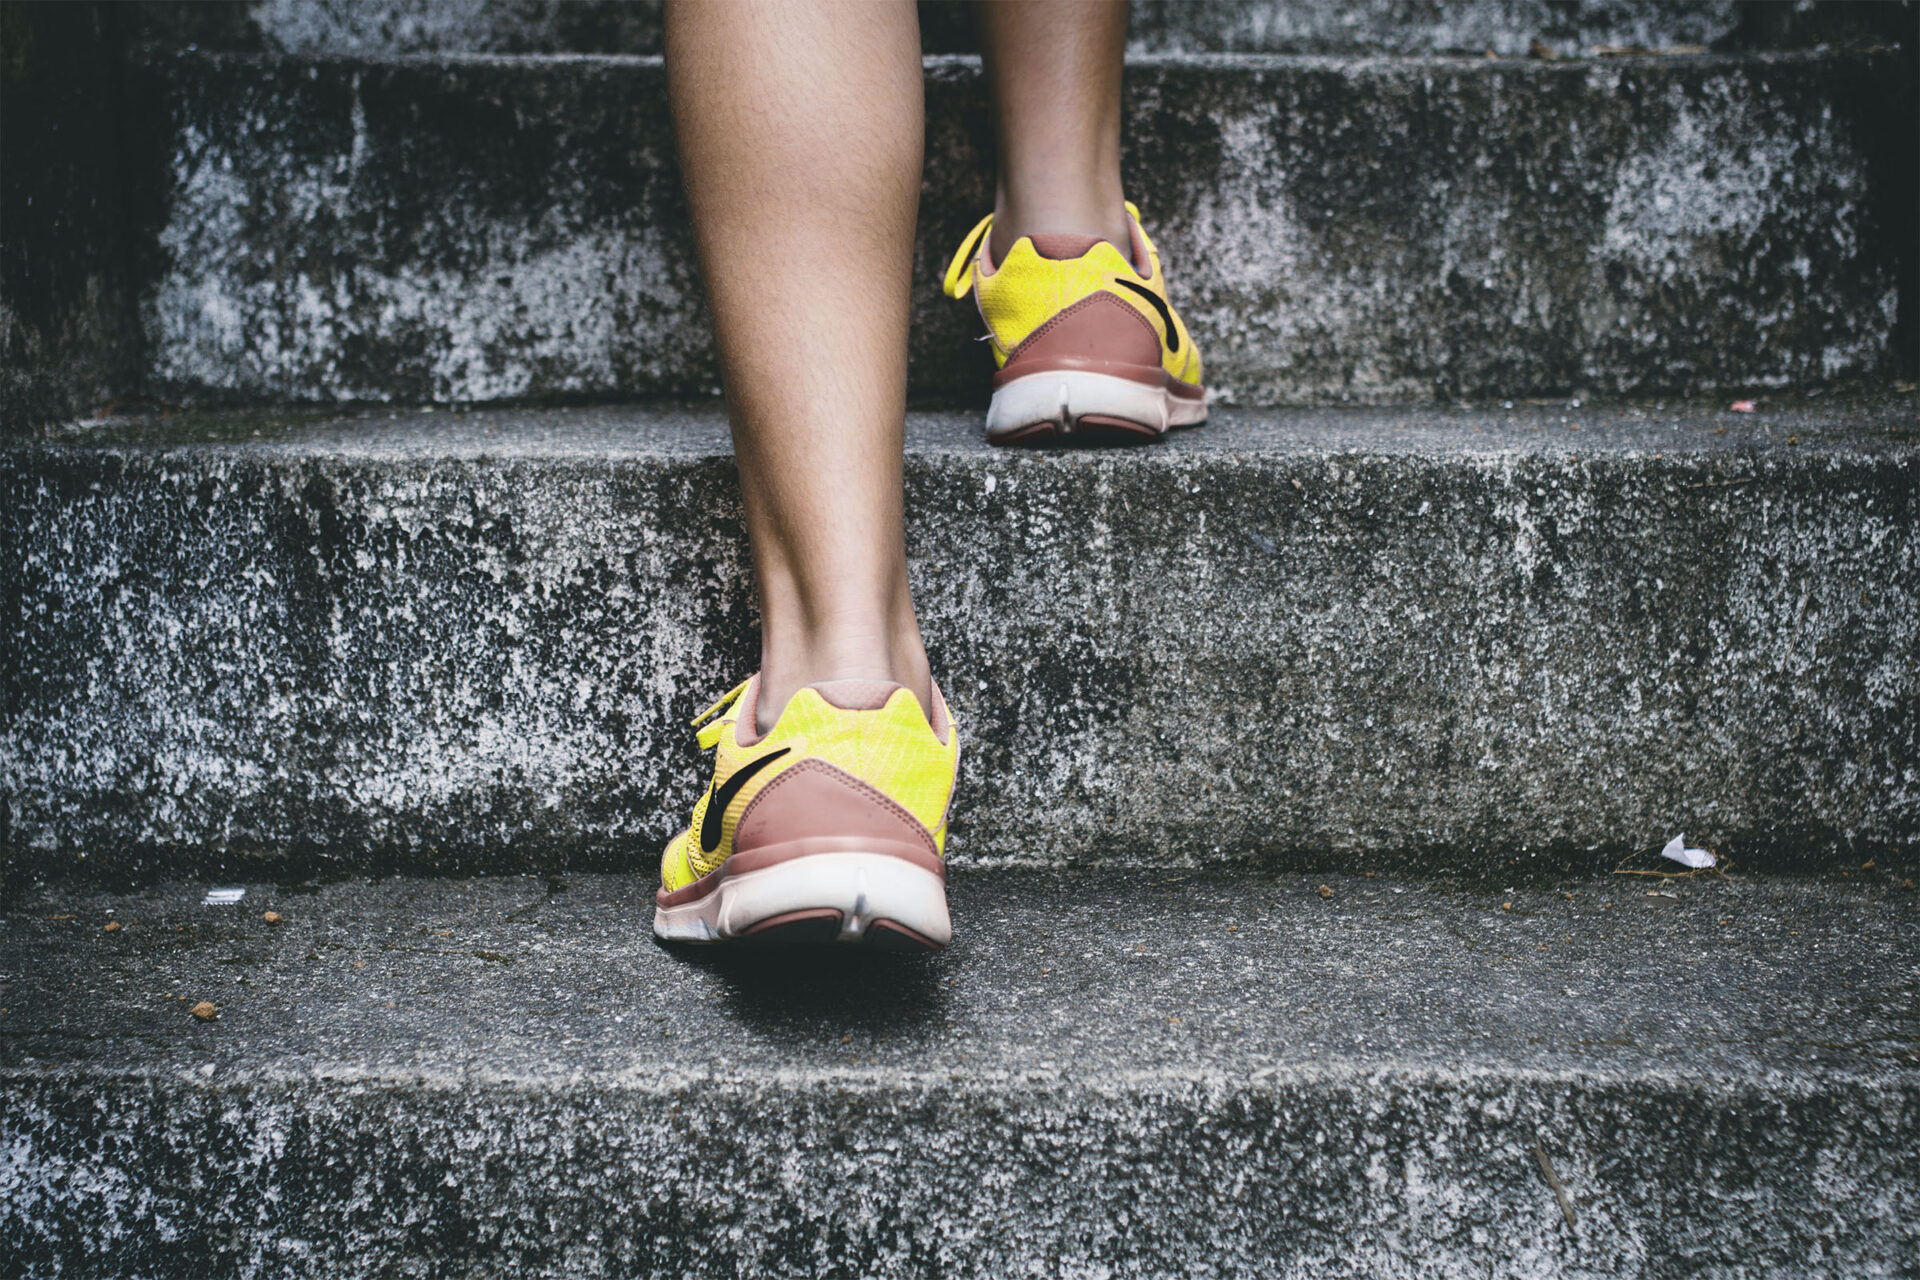 Schicke Sneakers, die gute Vorsätze besser machen, tragen uns leichter steile Treppen hoch